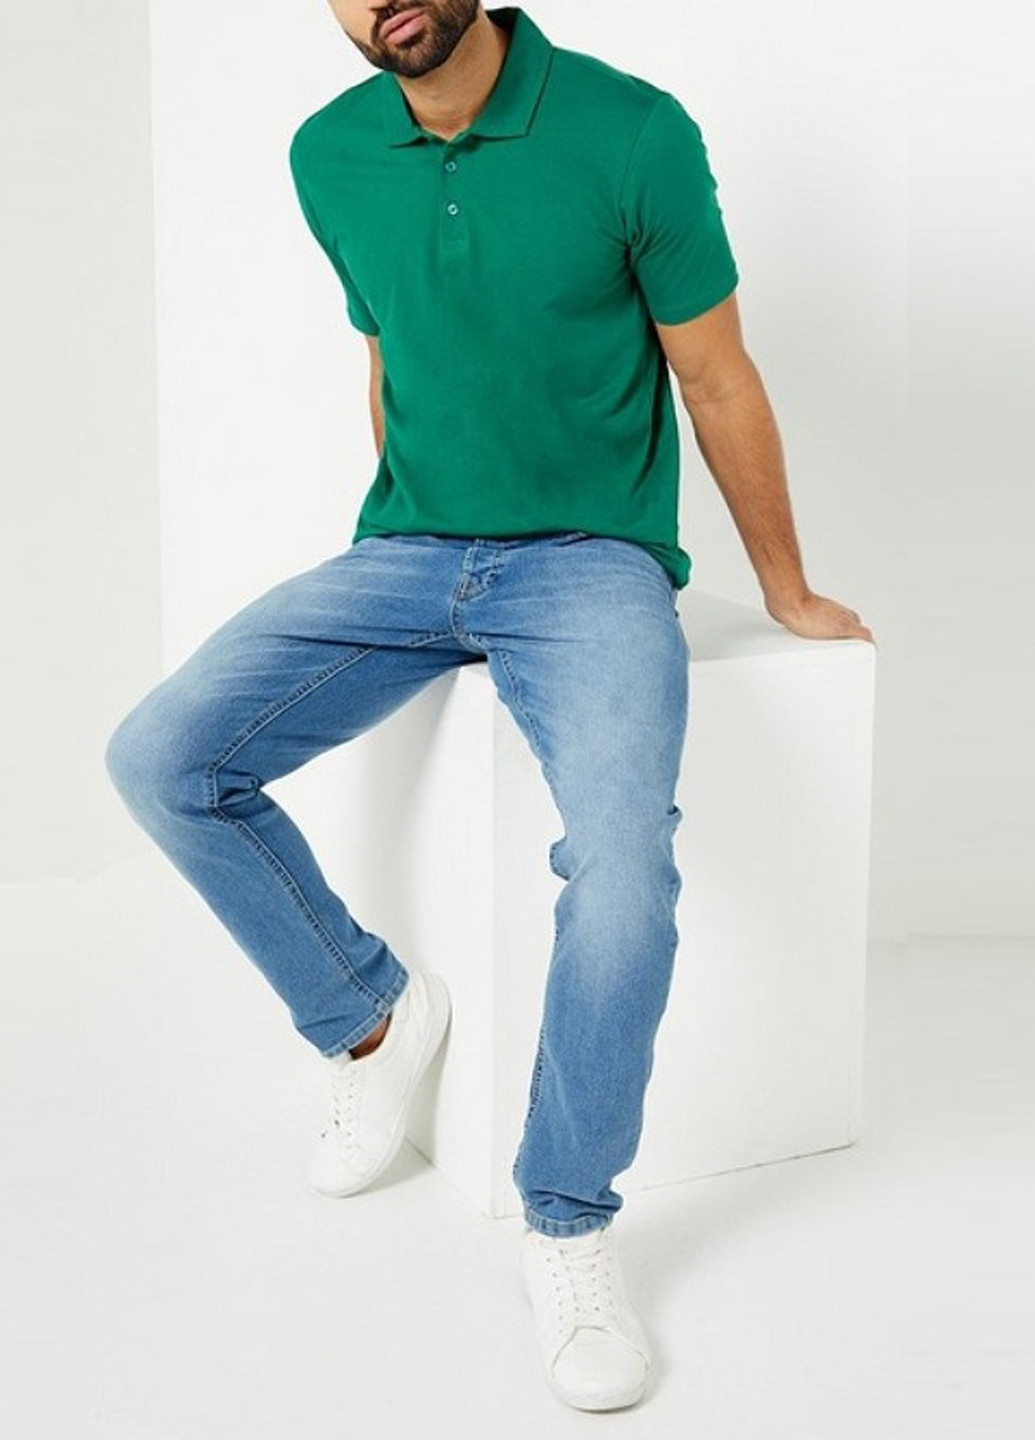 Зеленая футболка-поло для мужчин Studio однотонная